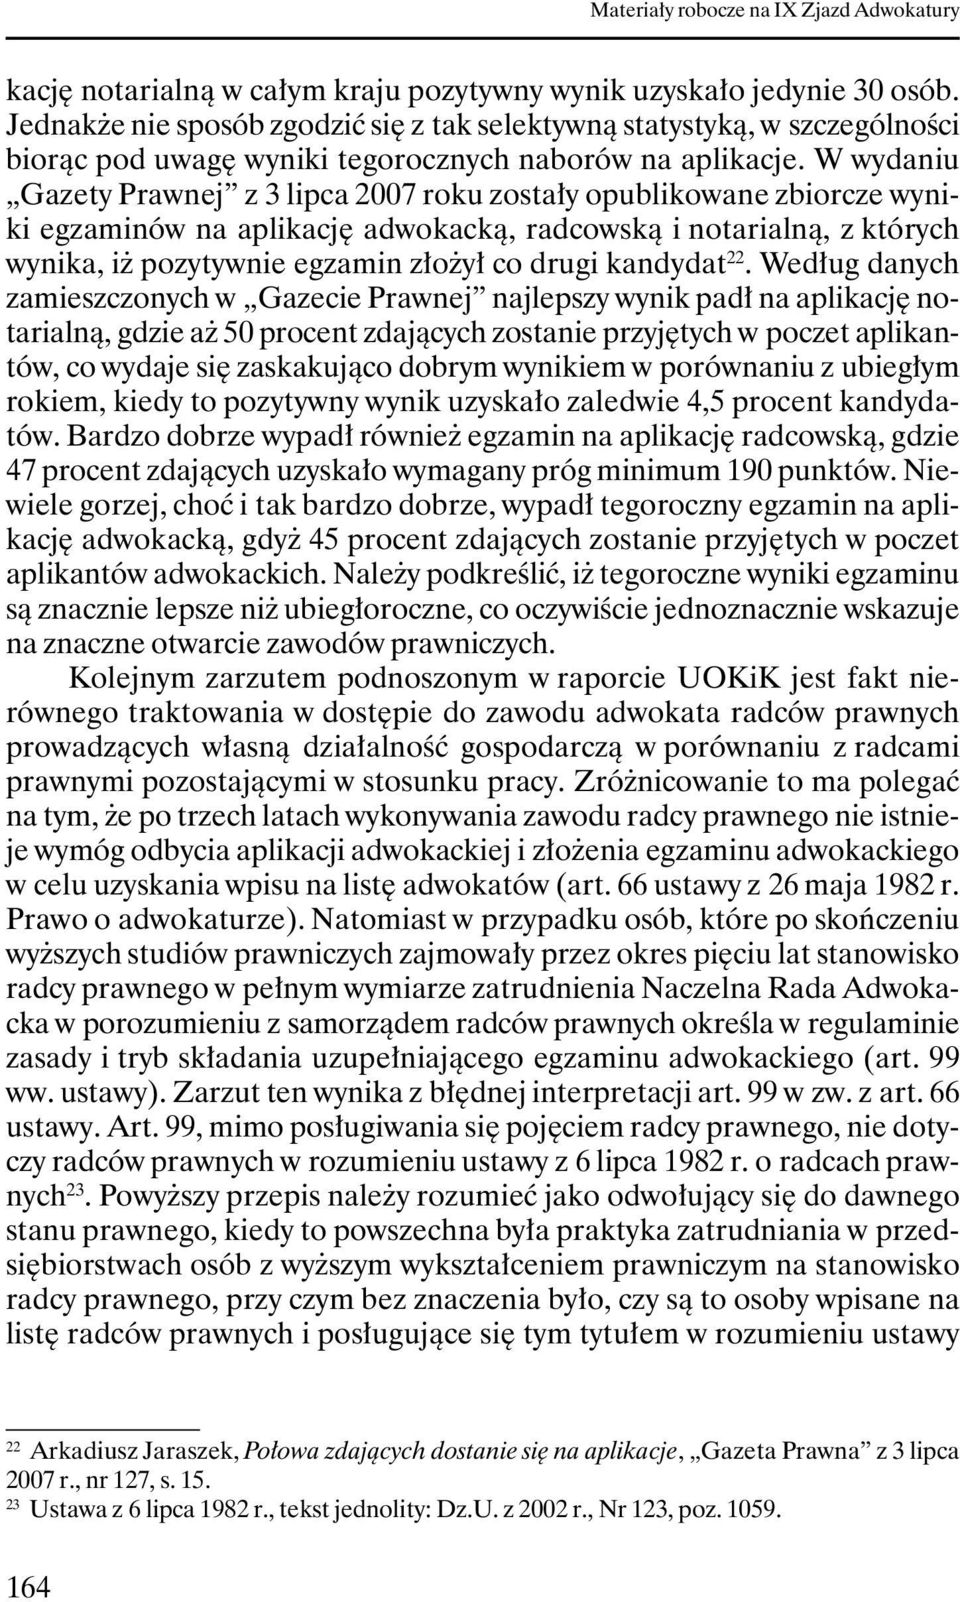 W wydaniu Gazety Prawnej z 3 lipca 2007 roku zostały opublikowane zbiorcze wyniki egzaminów na aplikację adwokacką, radcowską i notarialną, z których wynika, iŝ pozytywnie egzamin złoŝył co drugi